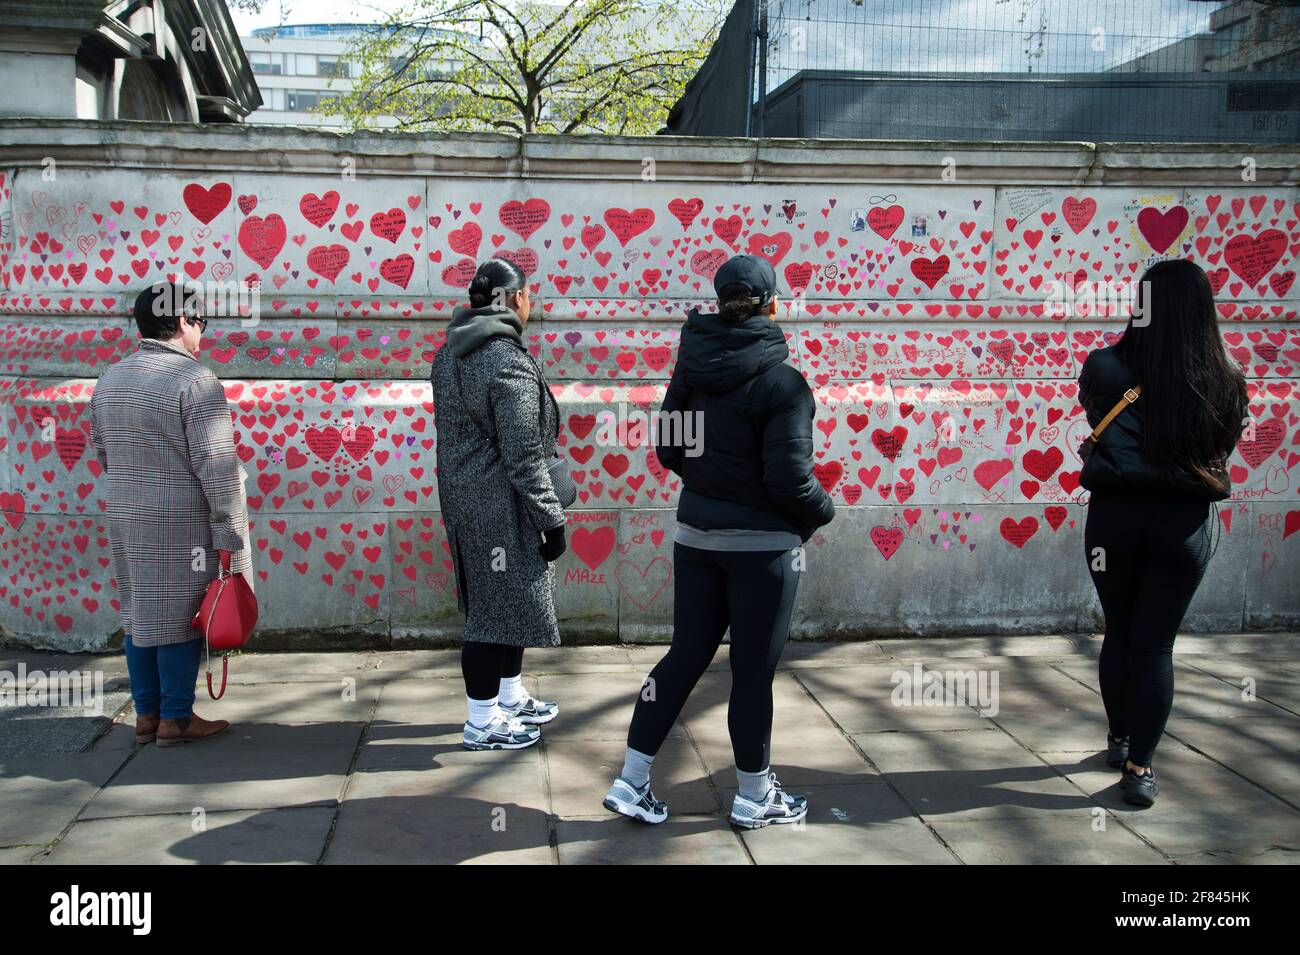 Southbank, Londres, Angleterre, Royaume-Uni. Mur commémoratif national Covid. Un groupe de jeunes regardent les coeurs rouges pour commerer ceux qui sont morts de Covid. Banque D'Images